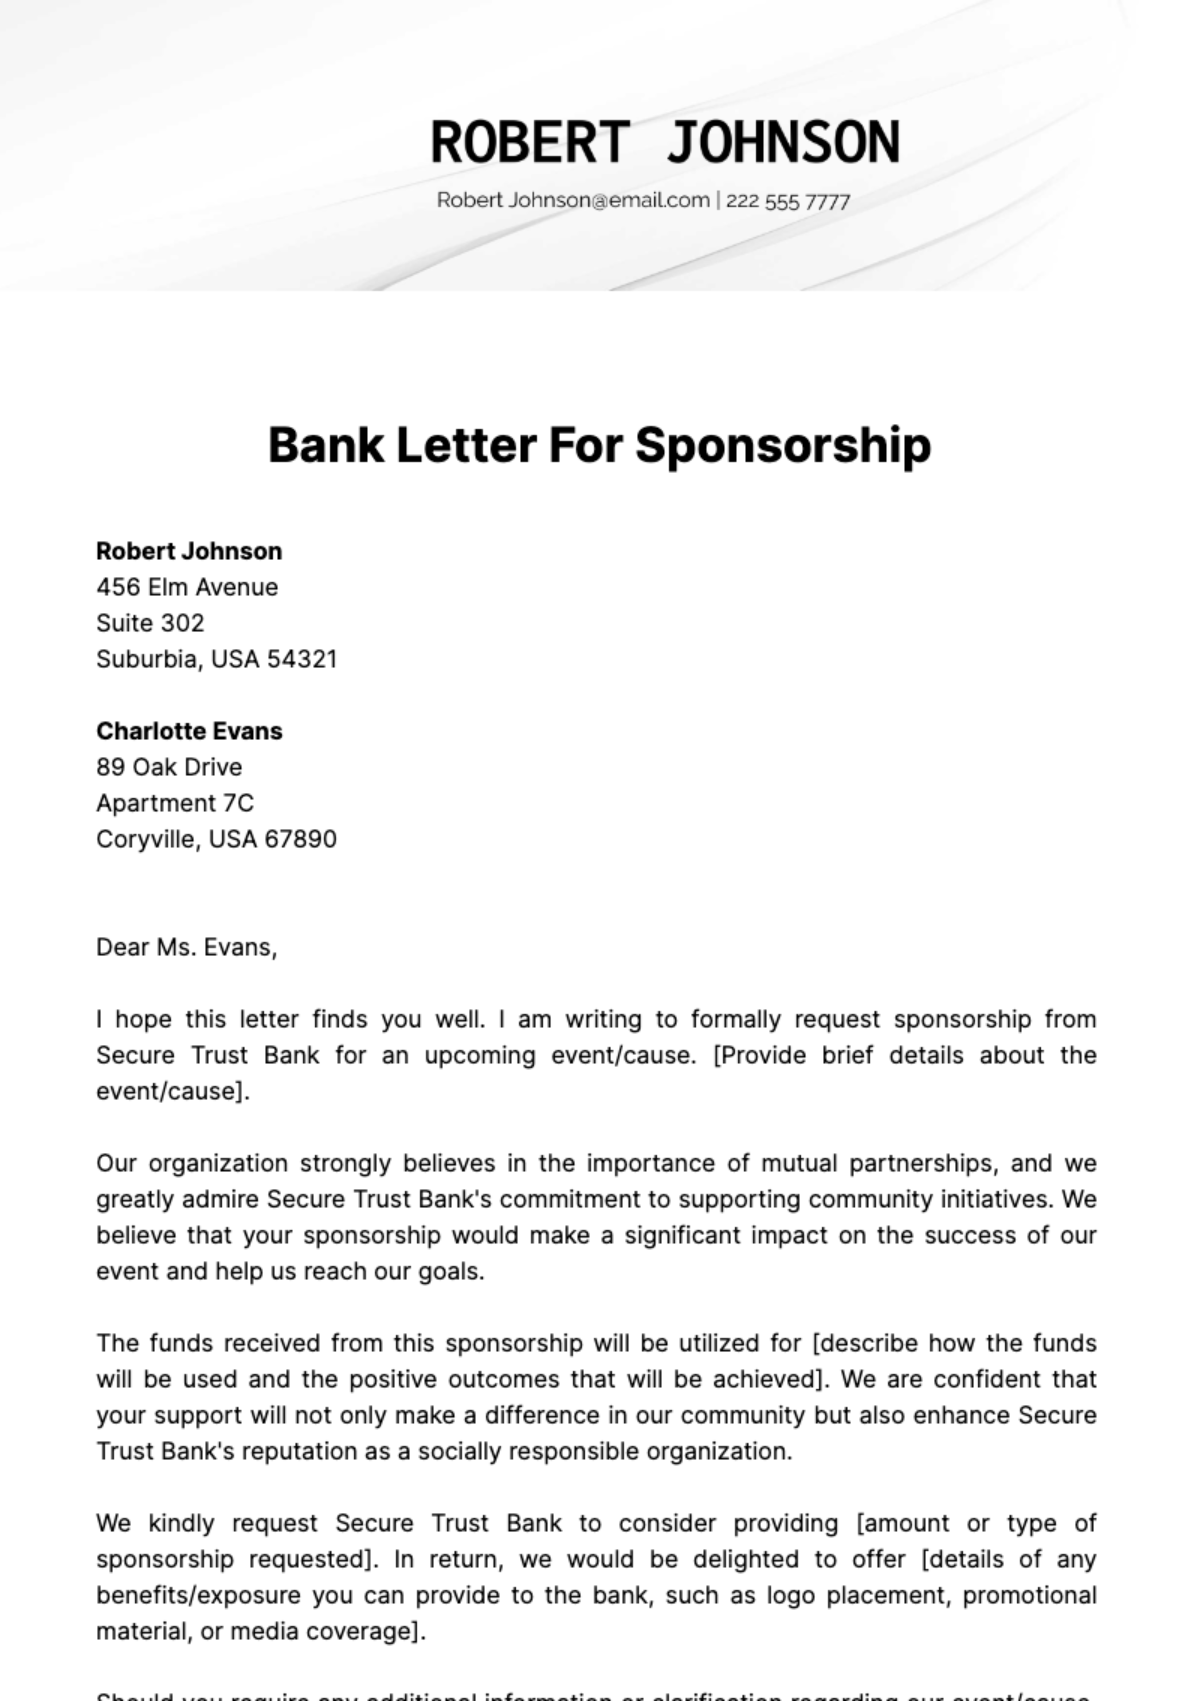 Bank Letter For Sponsorship Template